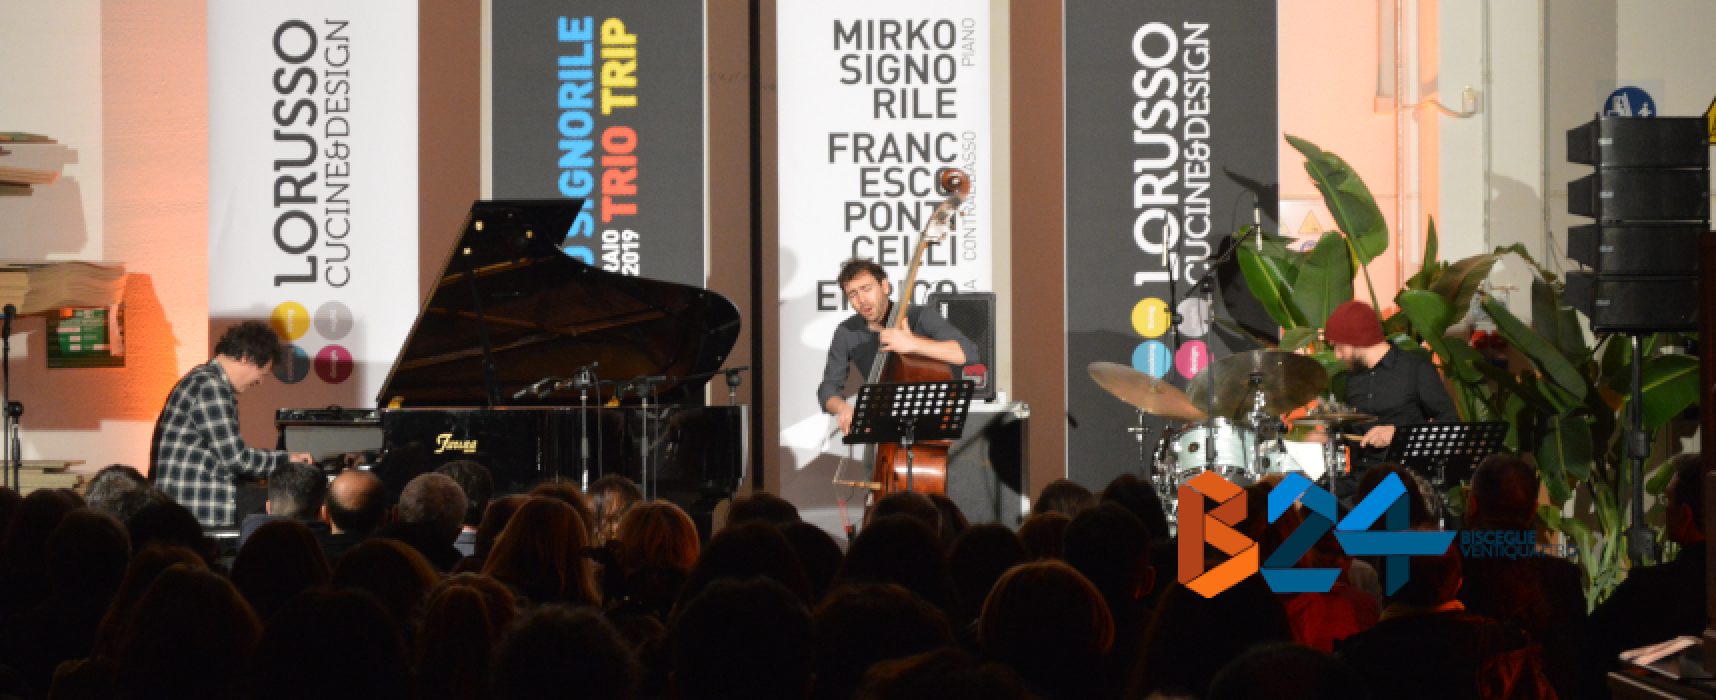 Musica e design, Mirko Signorile Trio Trip e ML22 per una serata da ricordare / FOTO